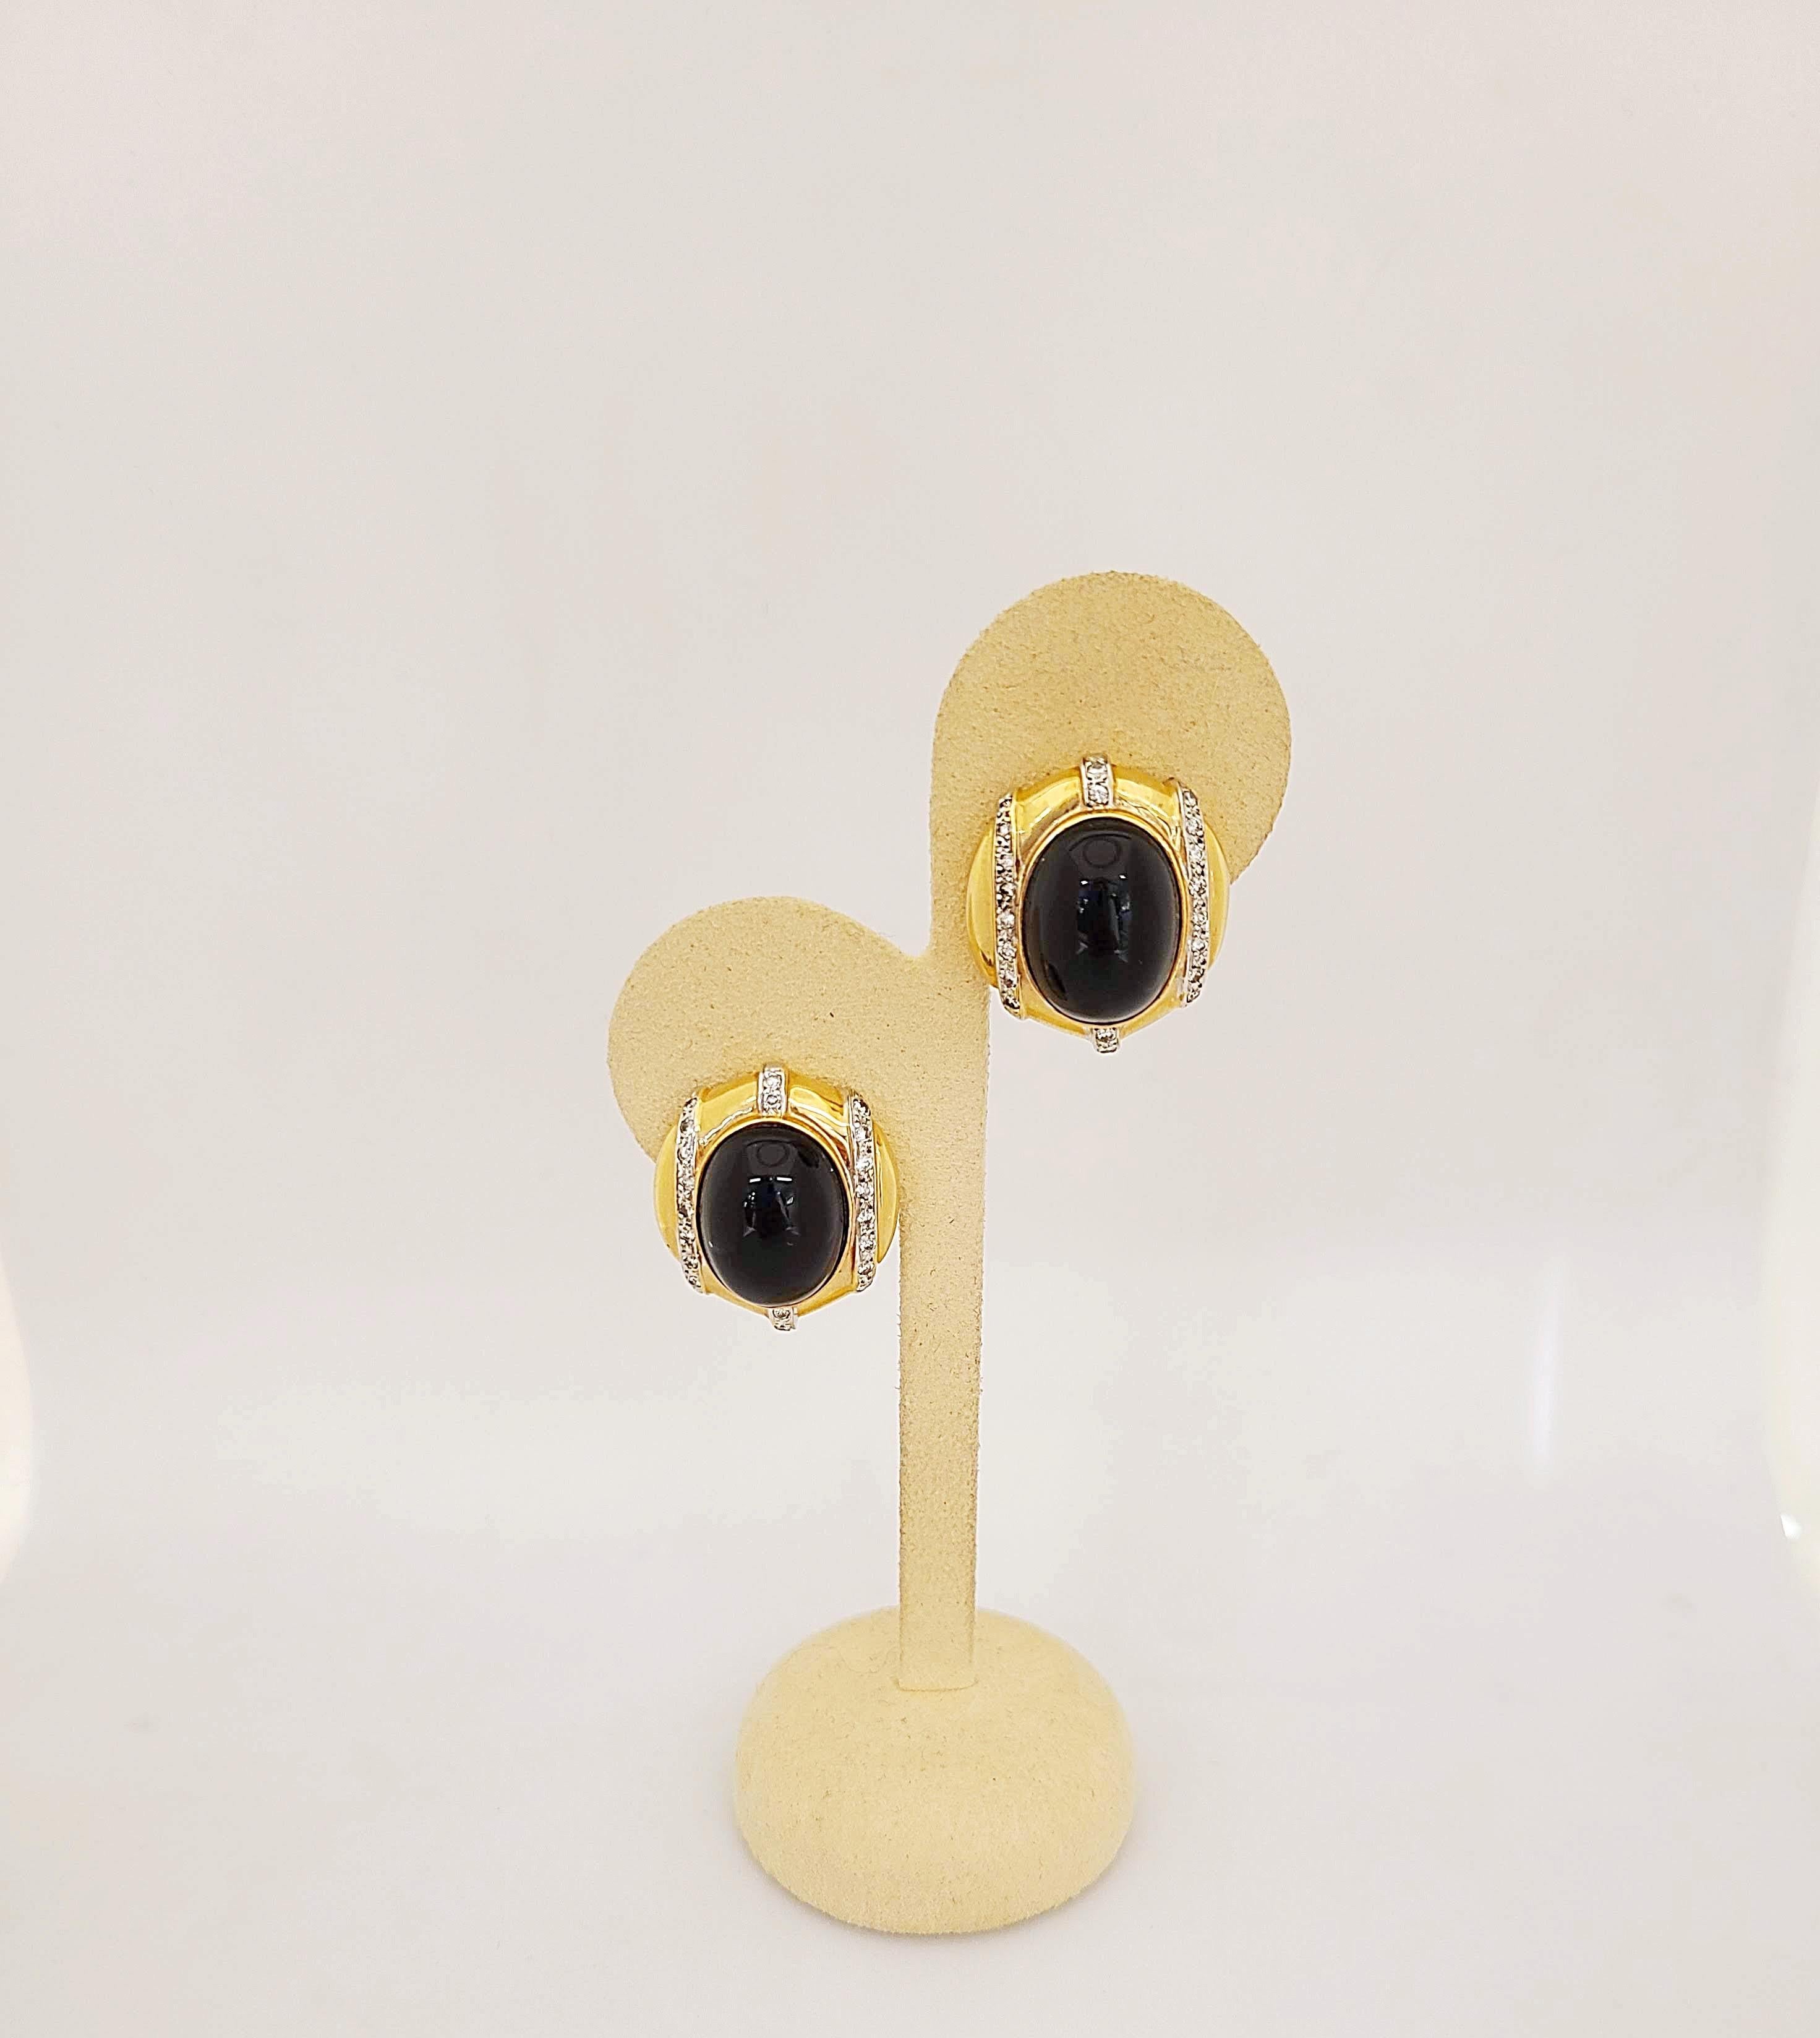 boucles d'oreilles en or jaune 14 carats serties de centres ovales en onyx noir. Des diamants ronds brillants sertis dans de l'or blanc accentuent cette jolie paire de boucles d'oreilles bouton. Les boucles d'oreilles ont des dos post/omega.
Environ